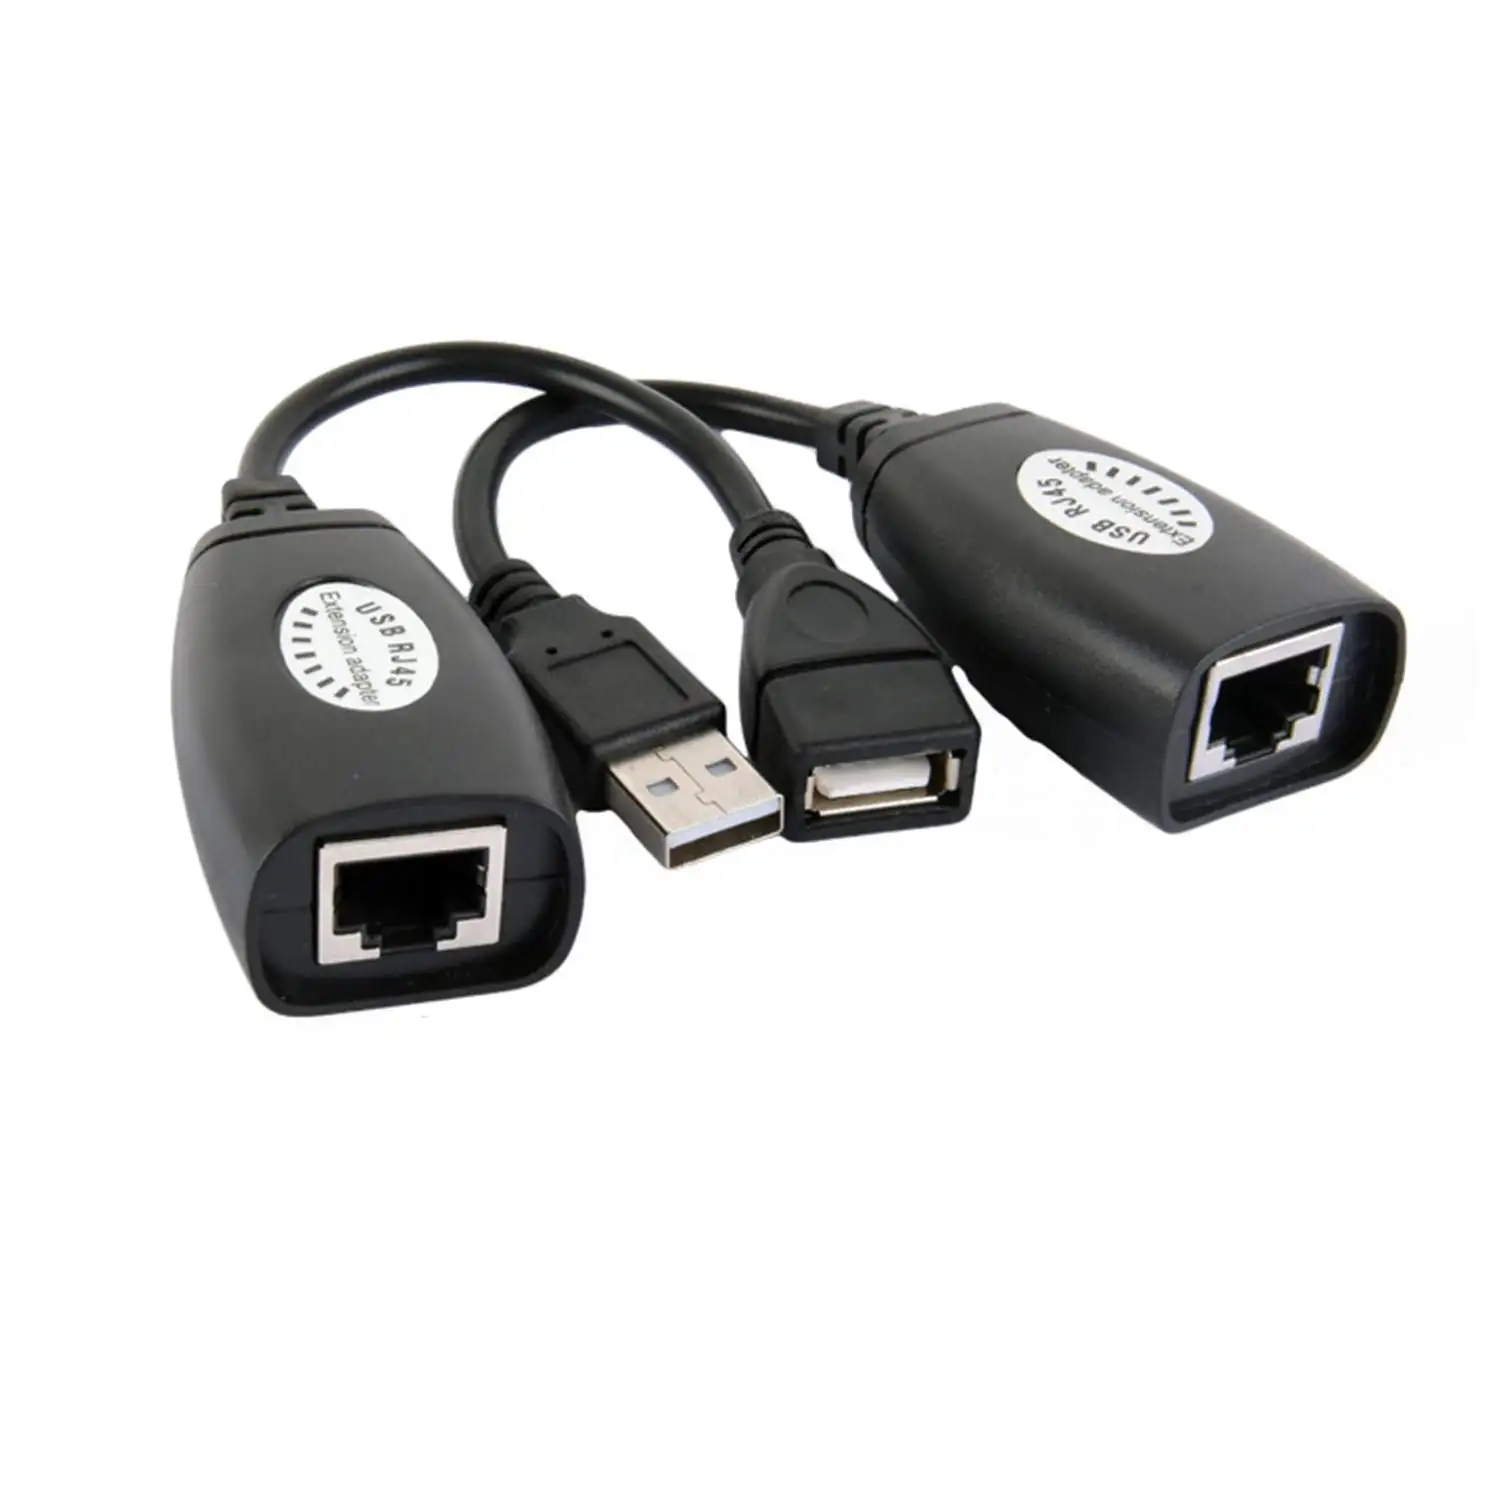 Magelei-Adaptador USB 2,0 macho y hembra a RJ45, Set-USB2.0 a RJ45, adaptador de extensión LAN sobre Cat5/ Cat5e/ Cat6, gran oferta de Amazon